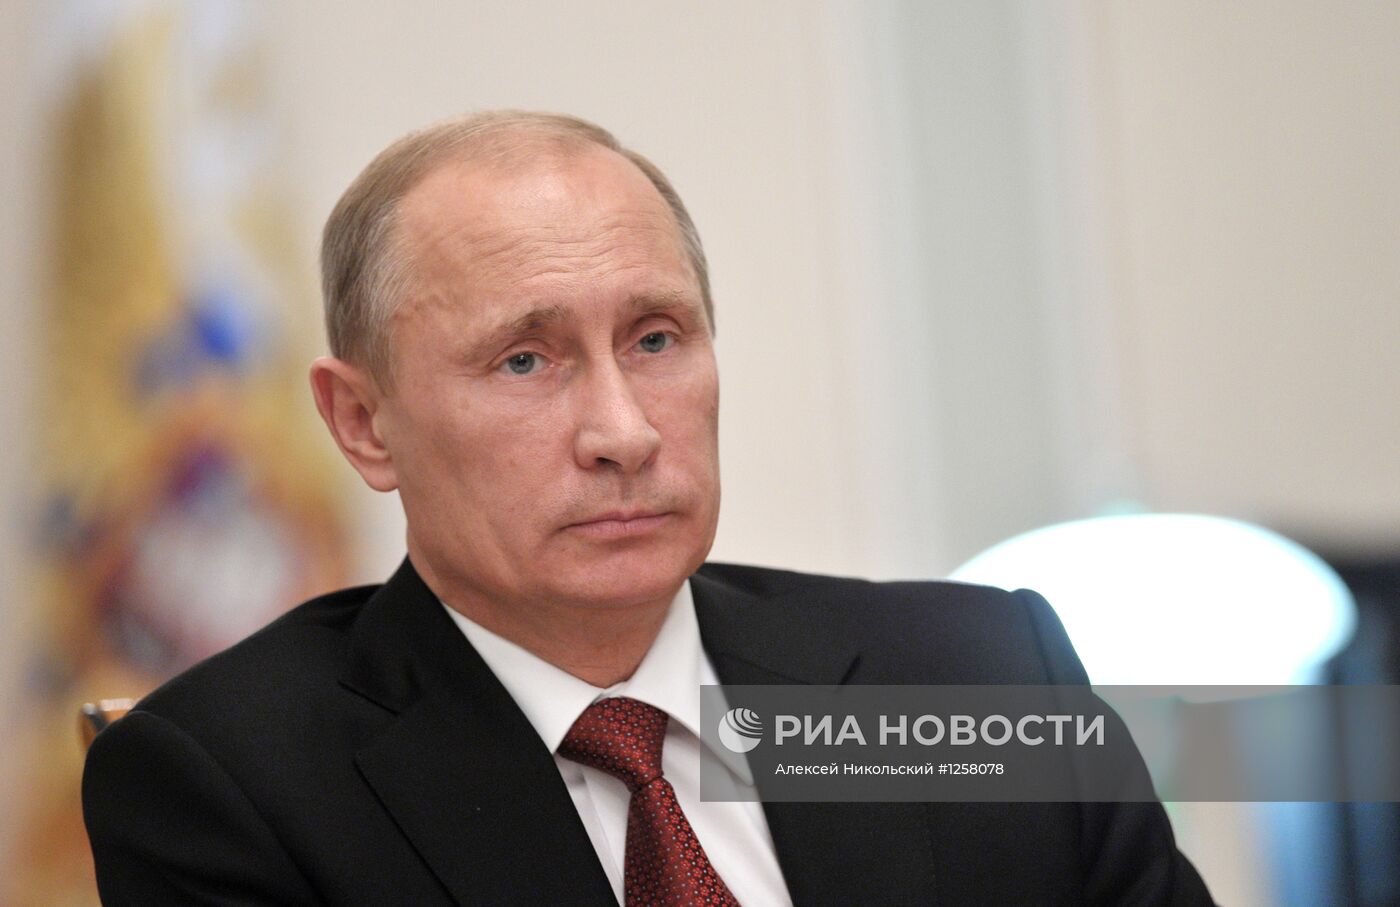 В.Путин проводит совещание в режиме видеоконференции